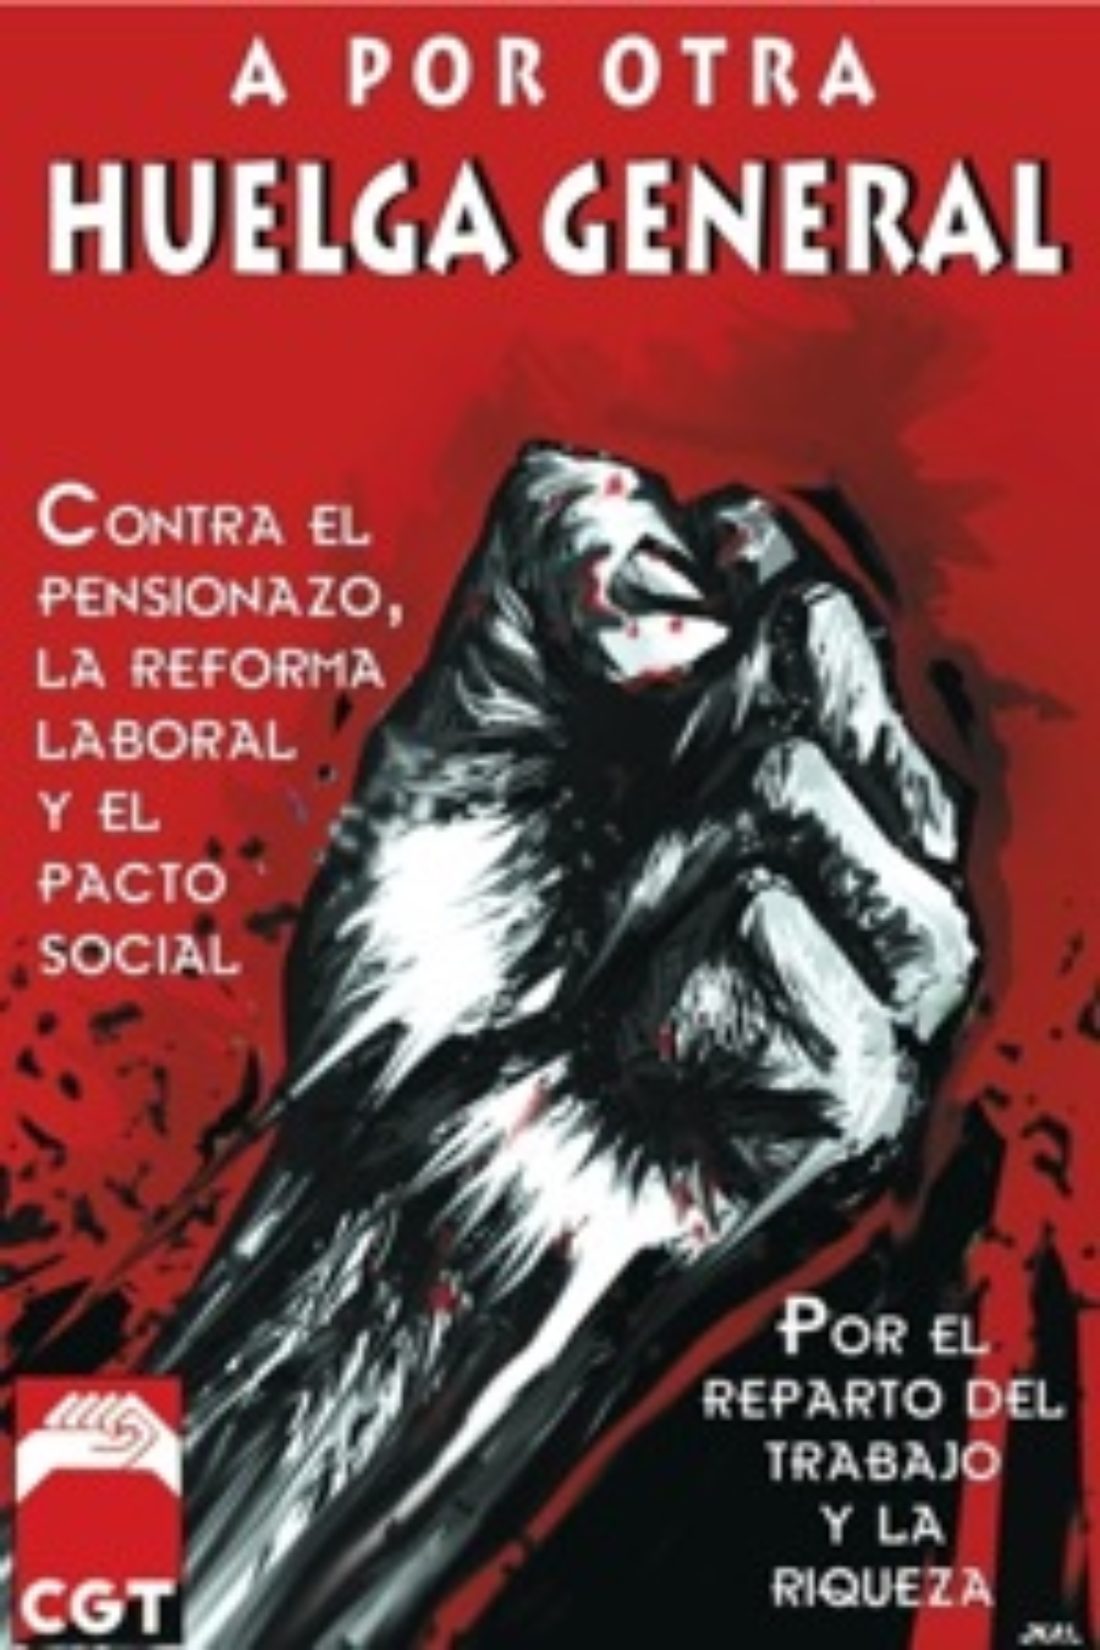 27 enero, Granada : Manifestación contra las reformas antisociales y por otra huelga general